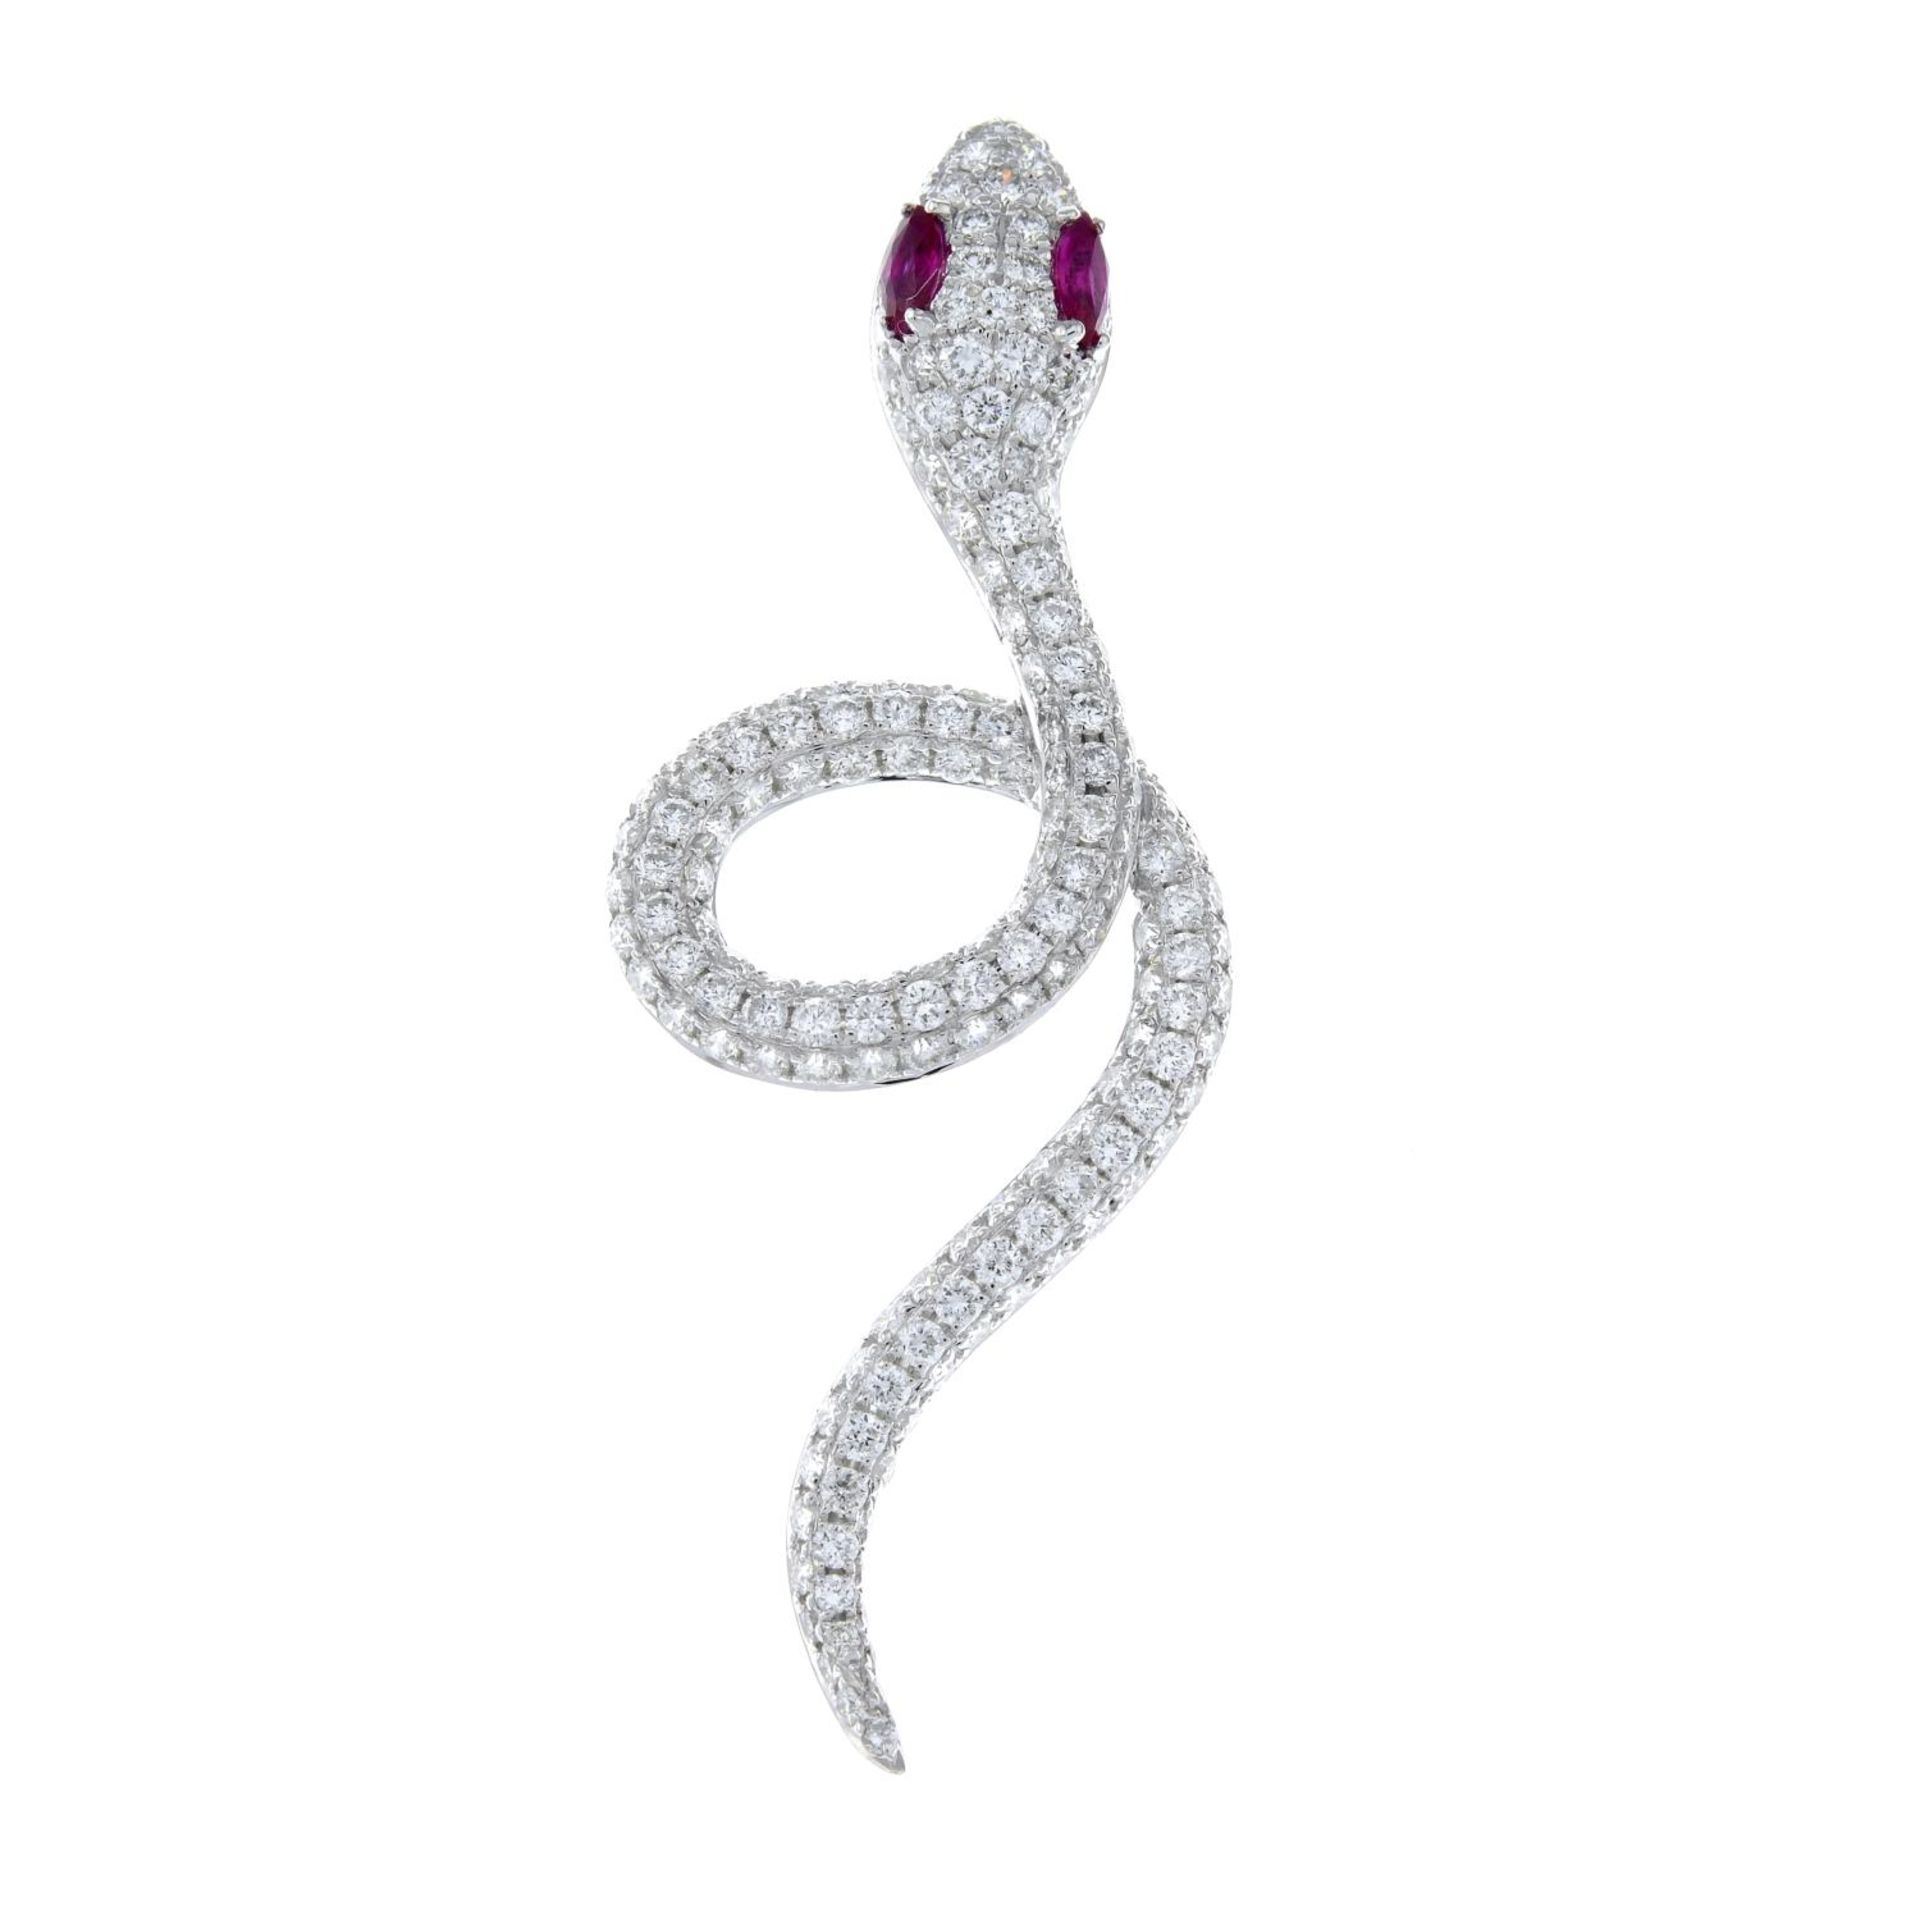 A pavé-set diamond snake pendant, - Image 2 of 4